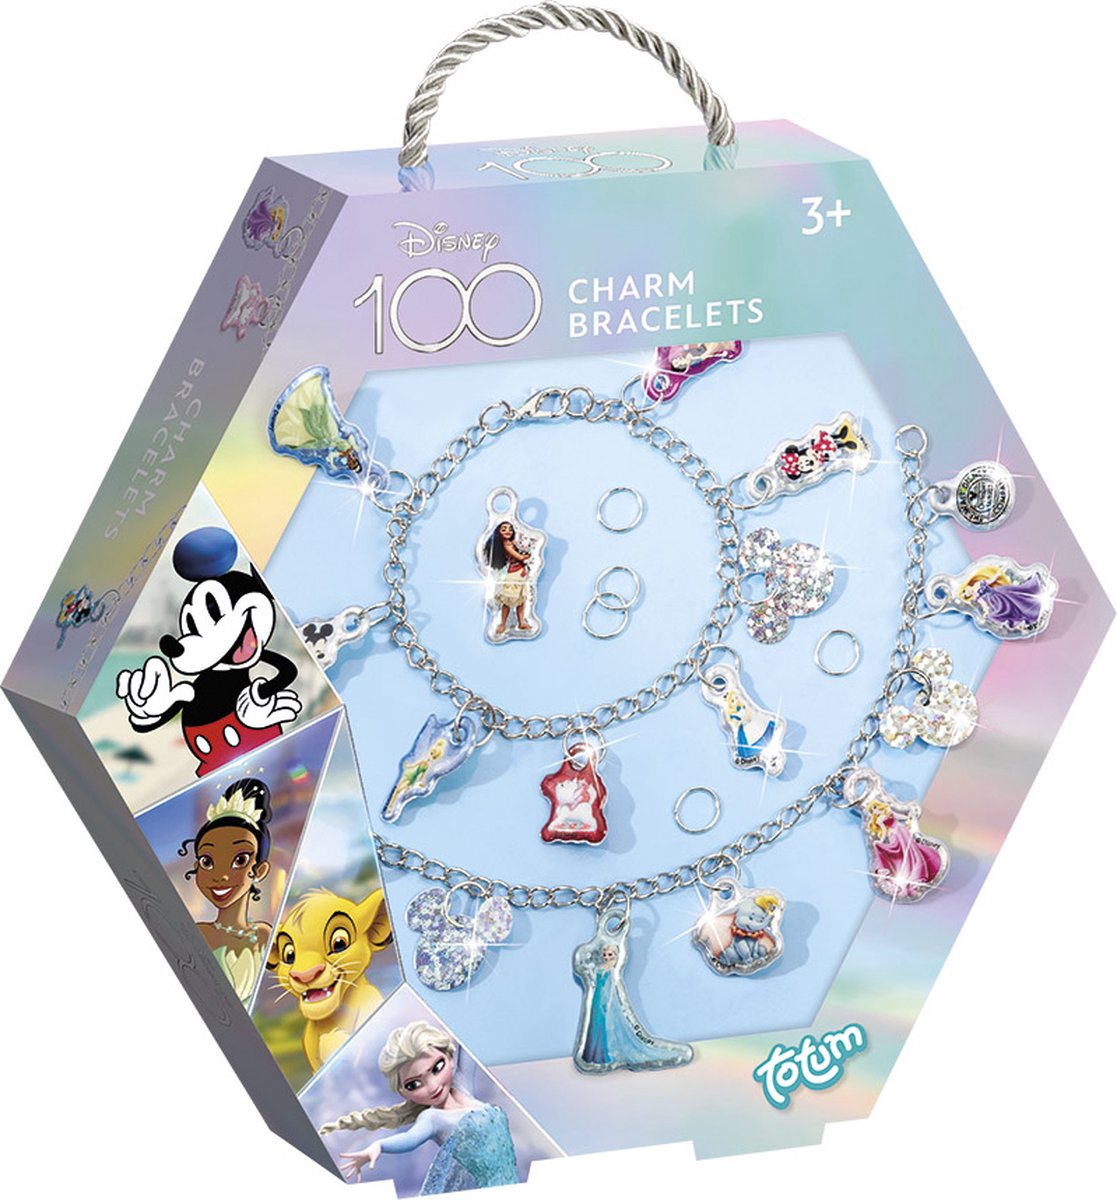 Totum Disney 100 glitter bedelarmbandjes prinsessen en classics - limited edition - jubileumuitgave voor 100 jaar Disney